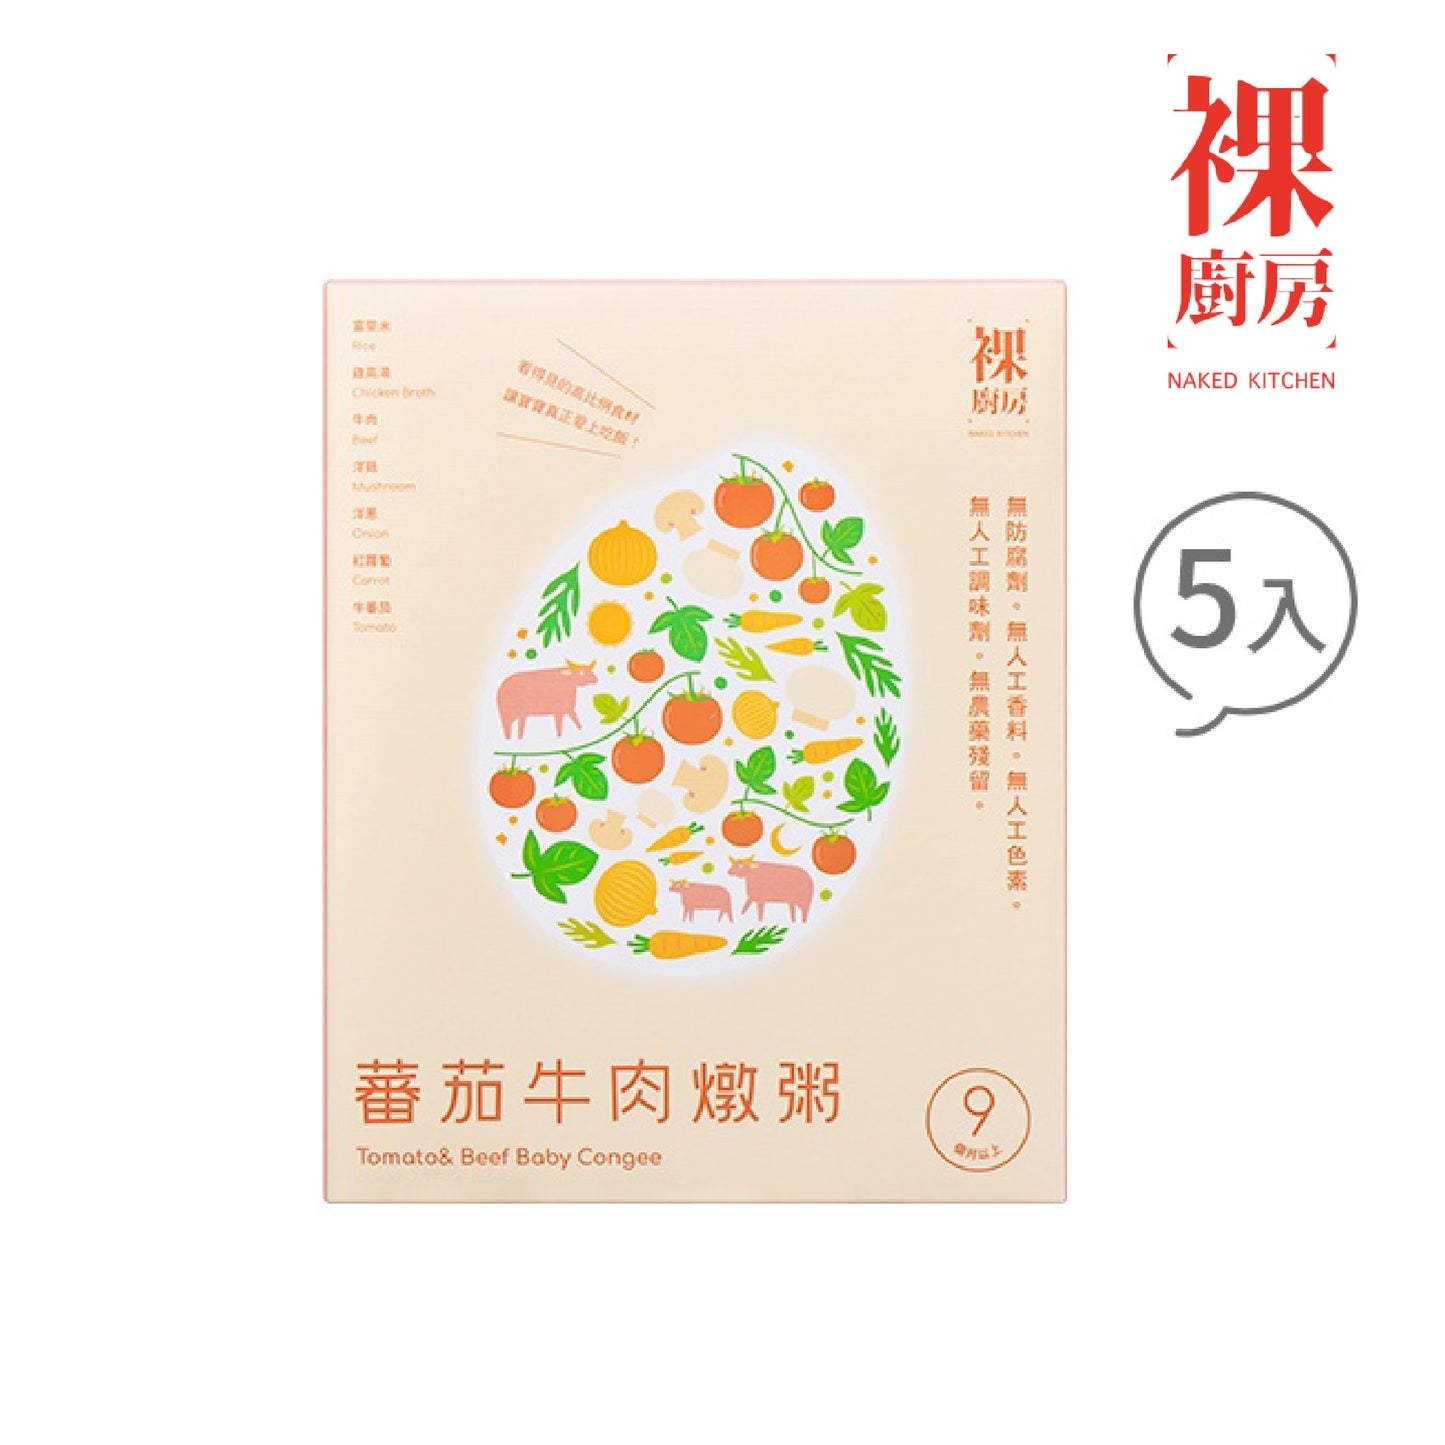 【ネイキッドキッチン】9Mトマトビーフ 常温ビッグベビー粥 5個パック(160g×5パック)